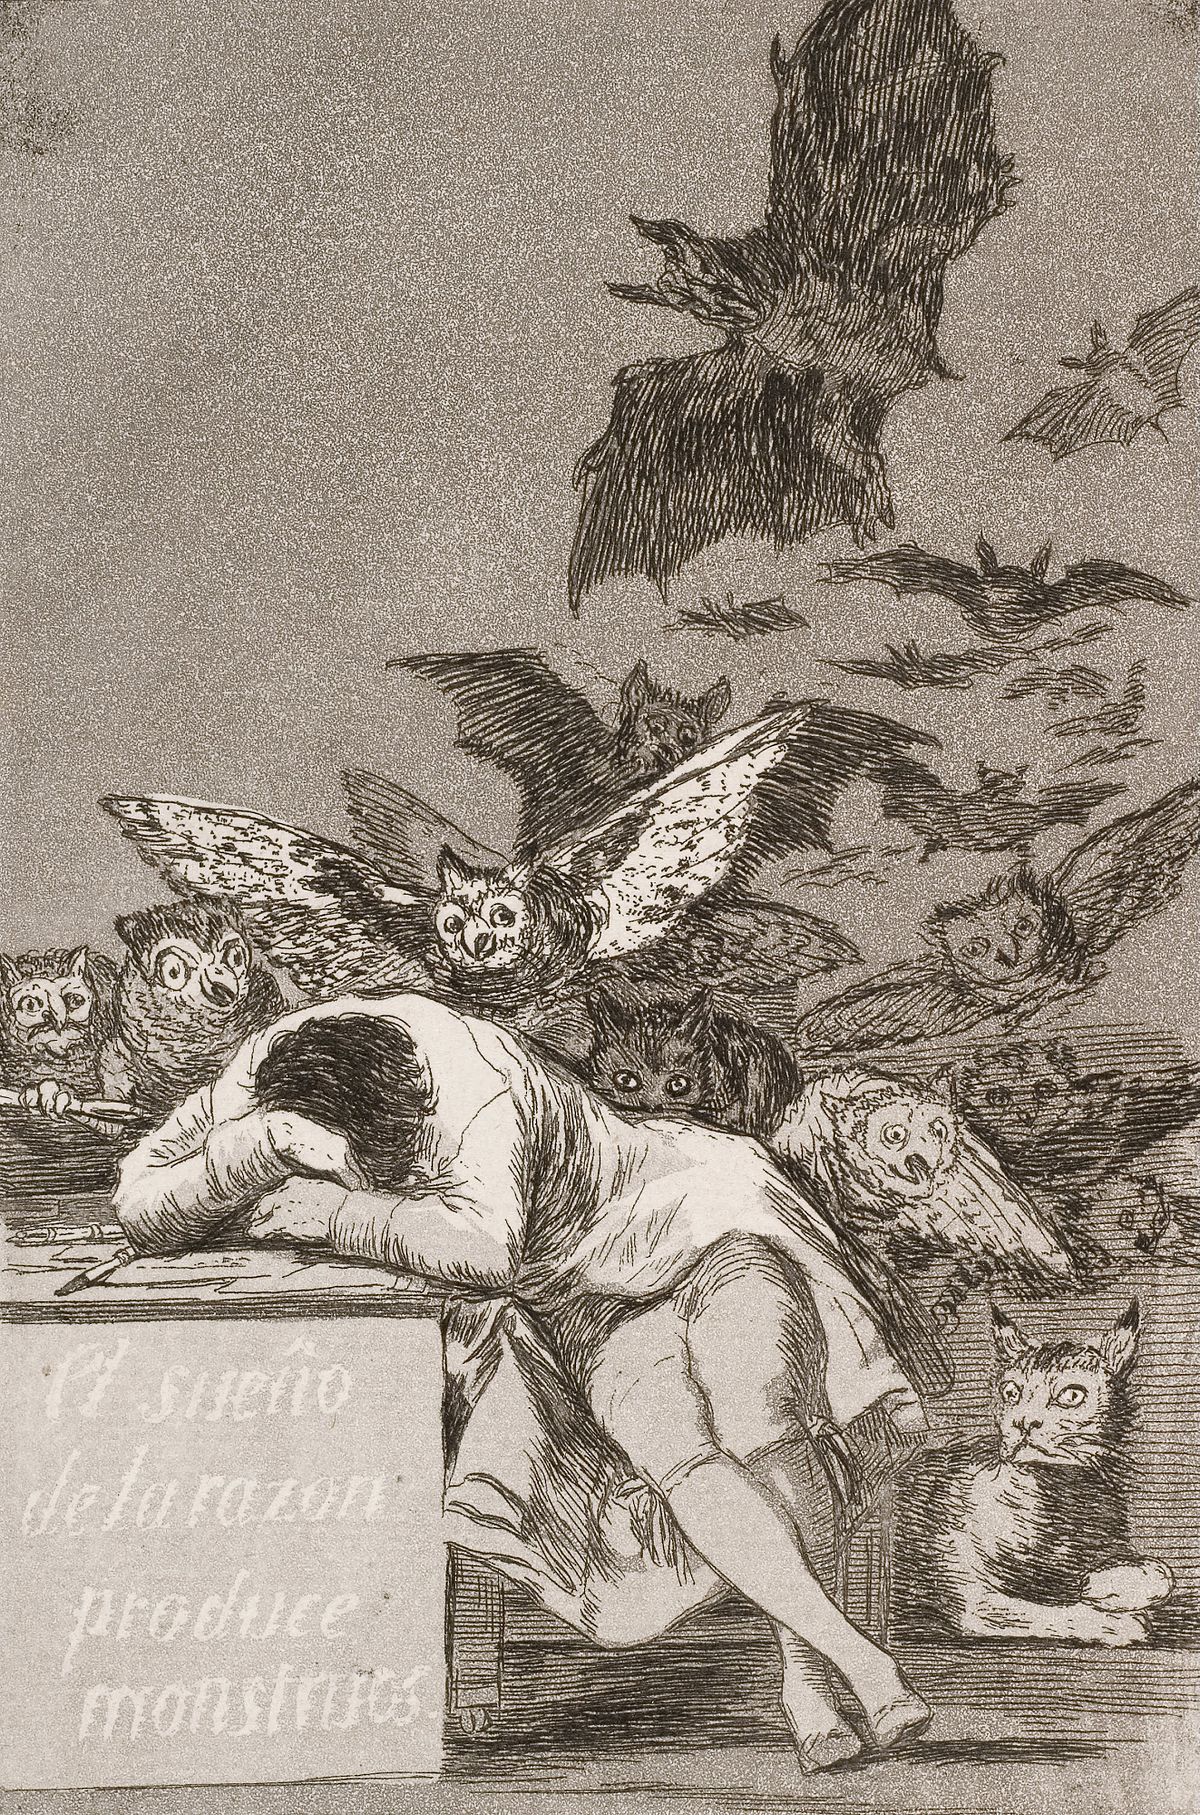 Mantığın Uykusu Canavarlar Üretir by Francisco Goya - 1799 - 21.6 x 15.2 cm özel koleksiyon